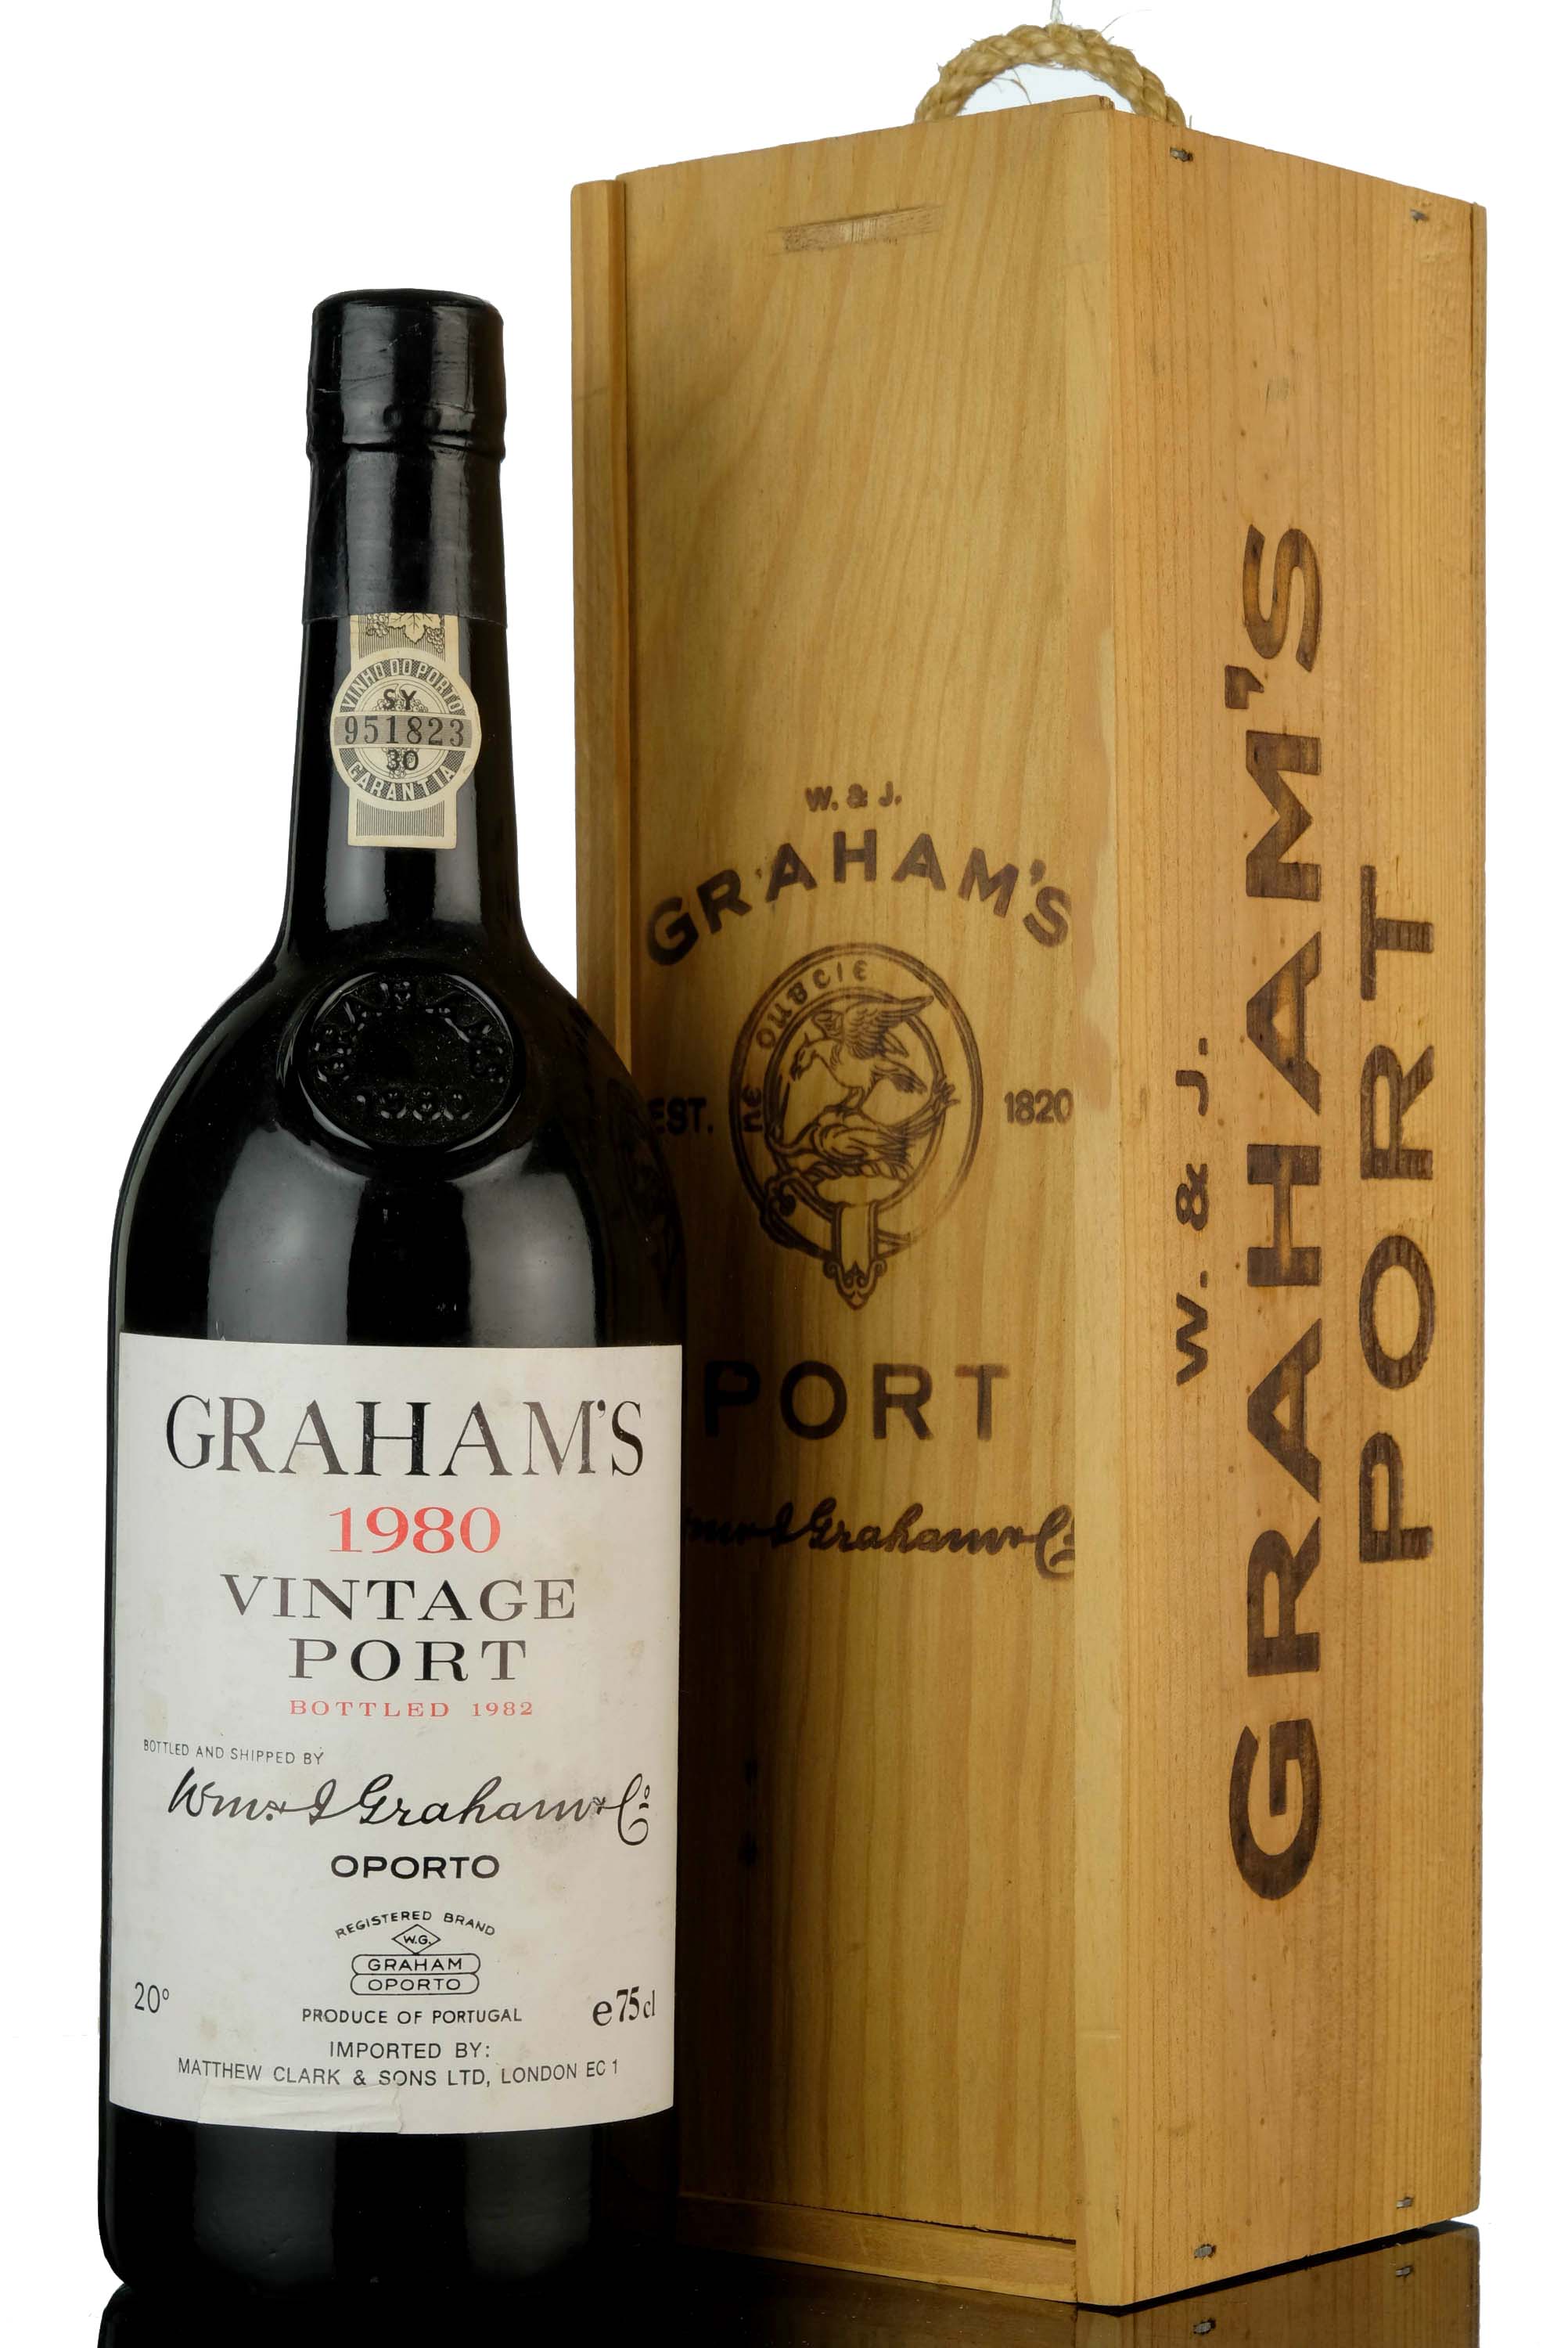 Grahams 1980 Vintage Port